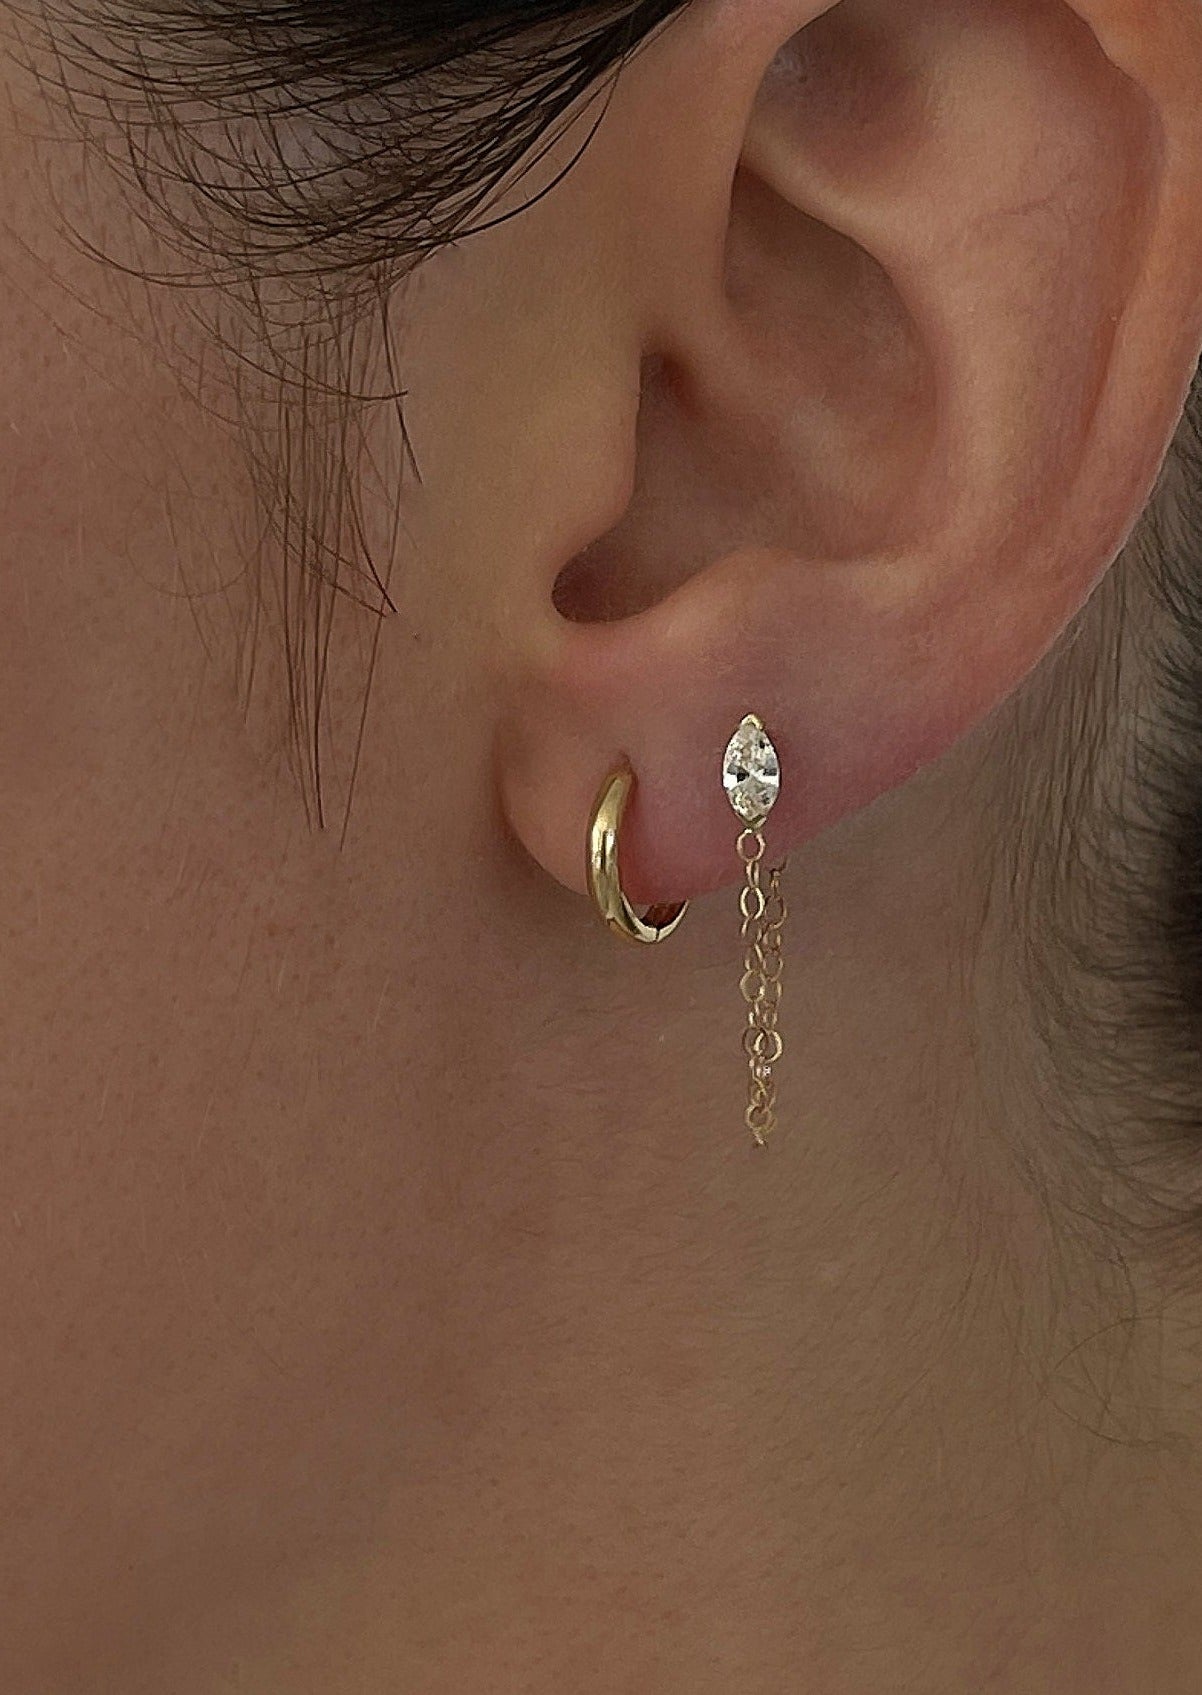 alt="Petite Hoop Huggie Earrings with marquise chain earring"